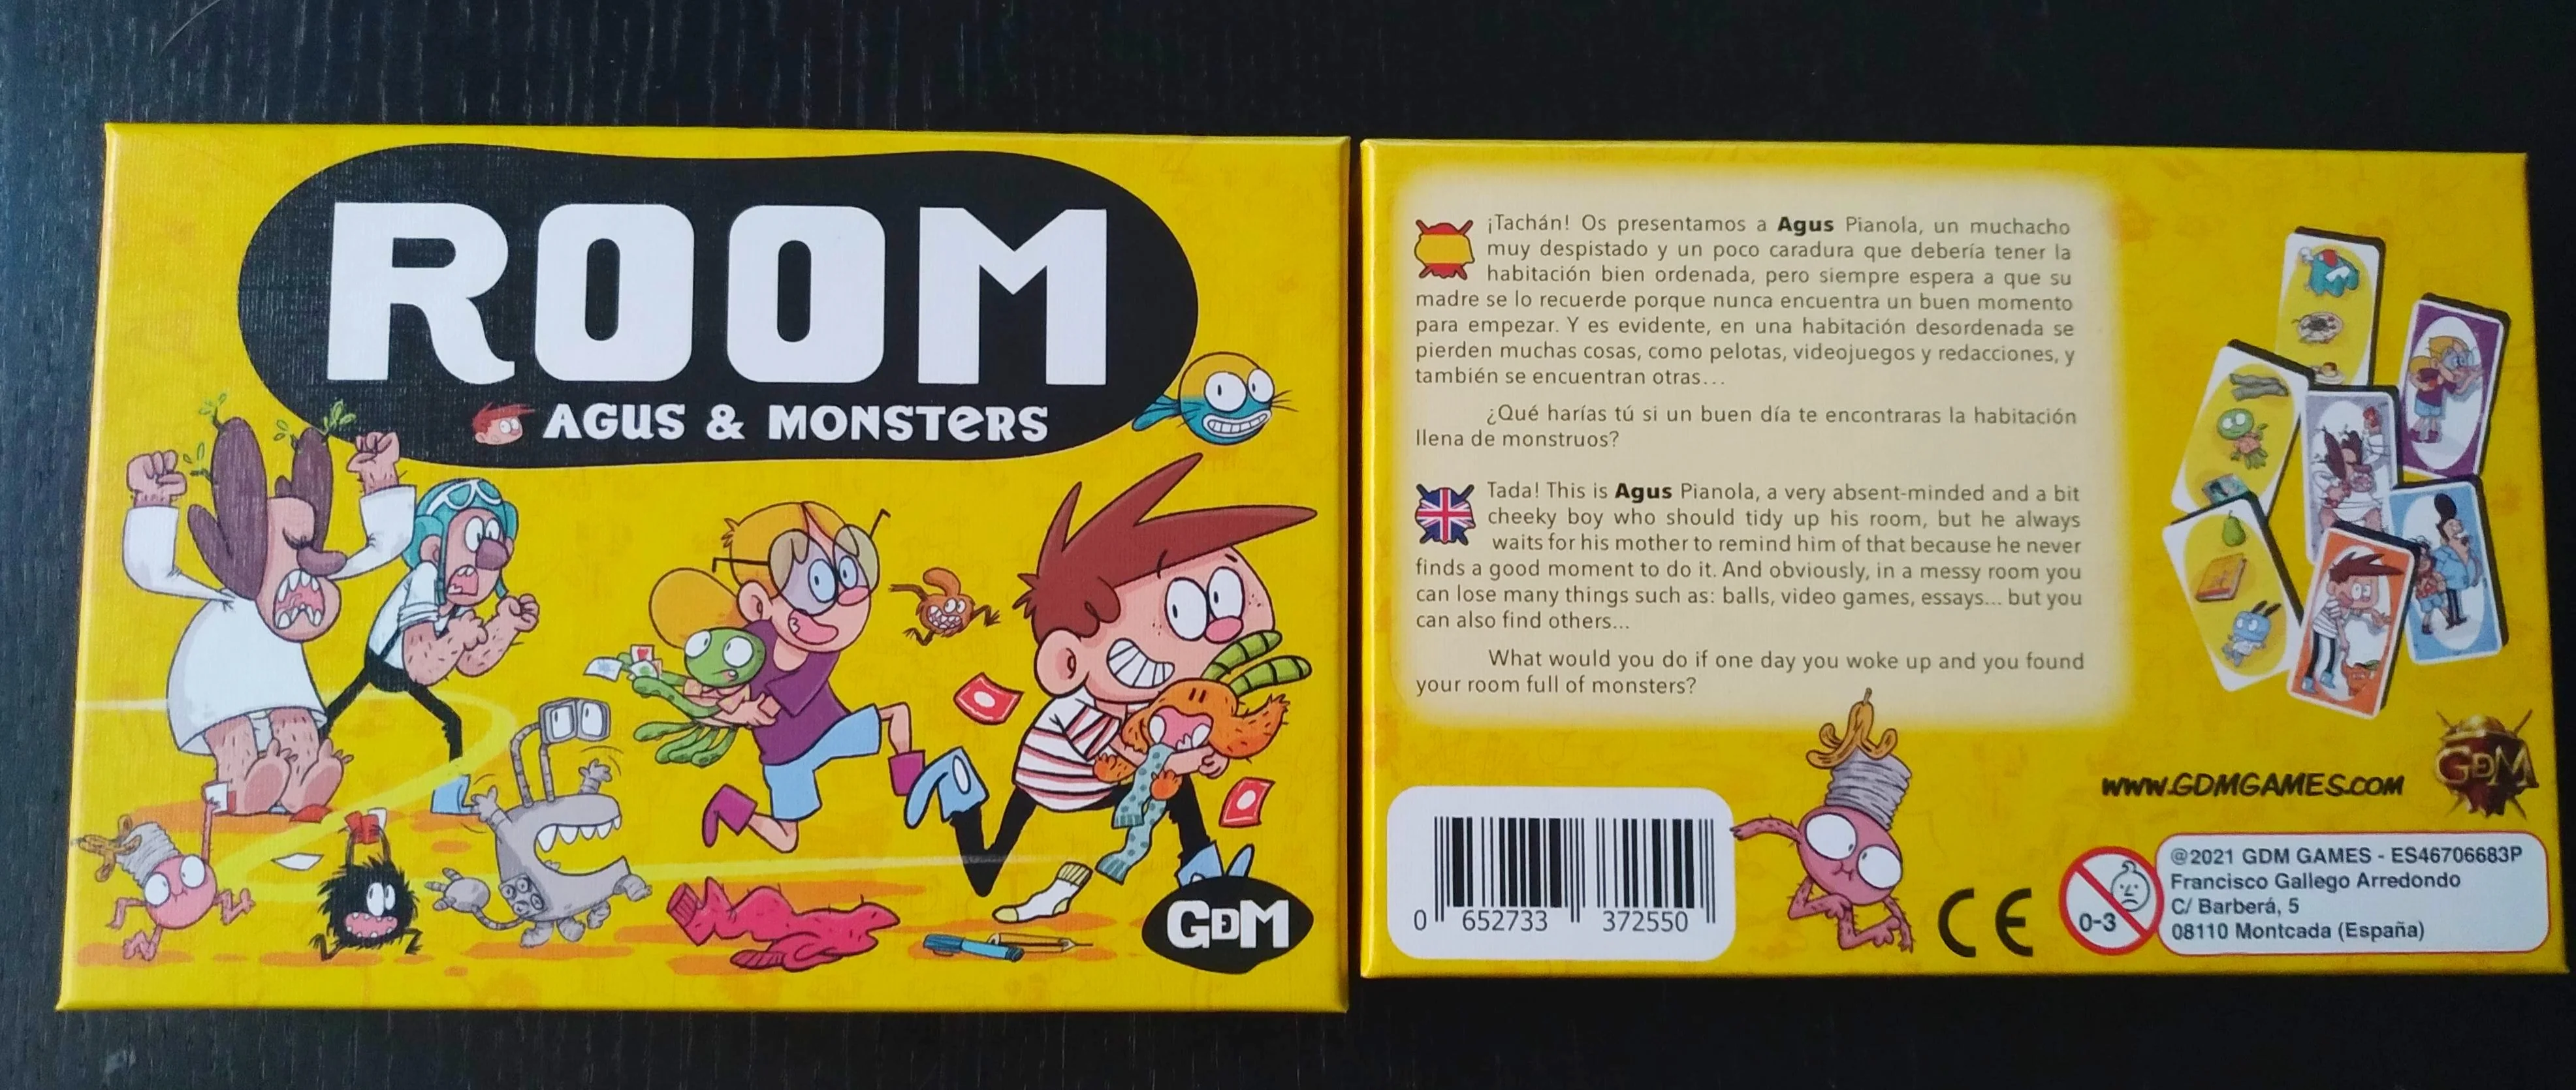 ROOM: Agus y los Monstruos en formato juego de mesa - Bebé a Mordor